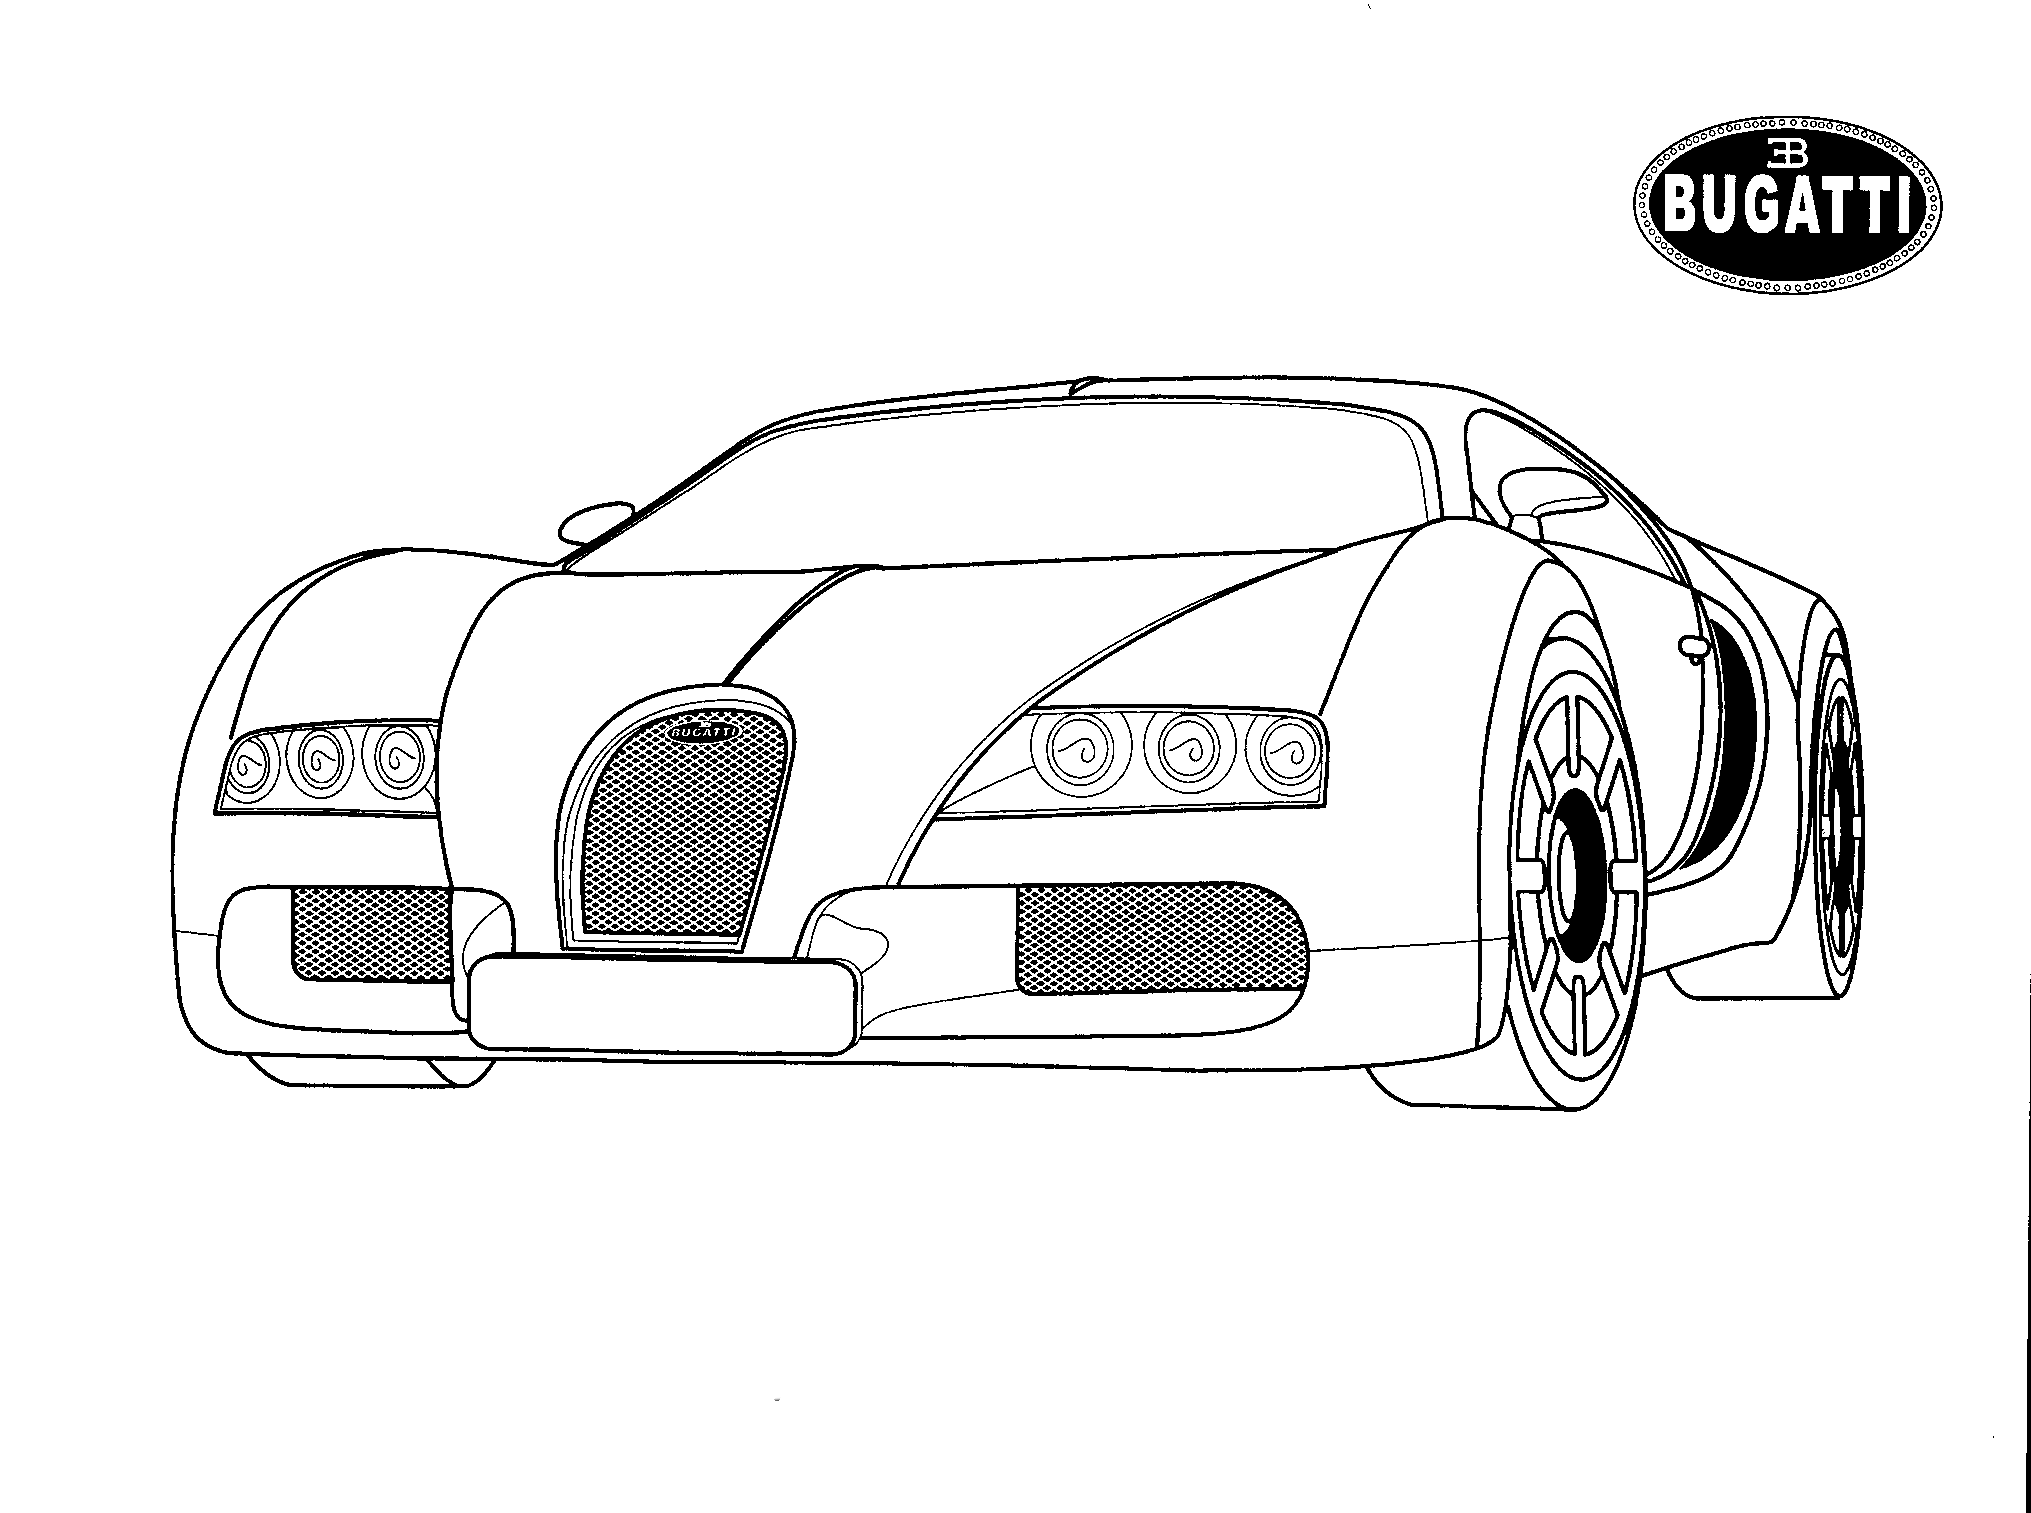 Coloring page - Bugatti (Italy)